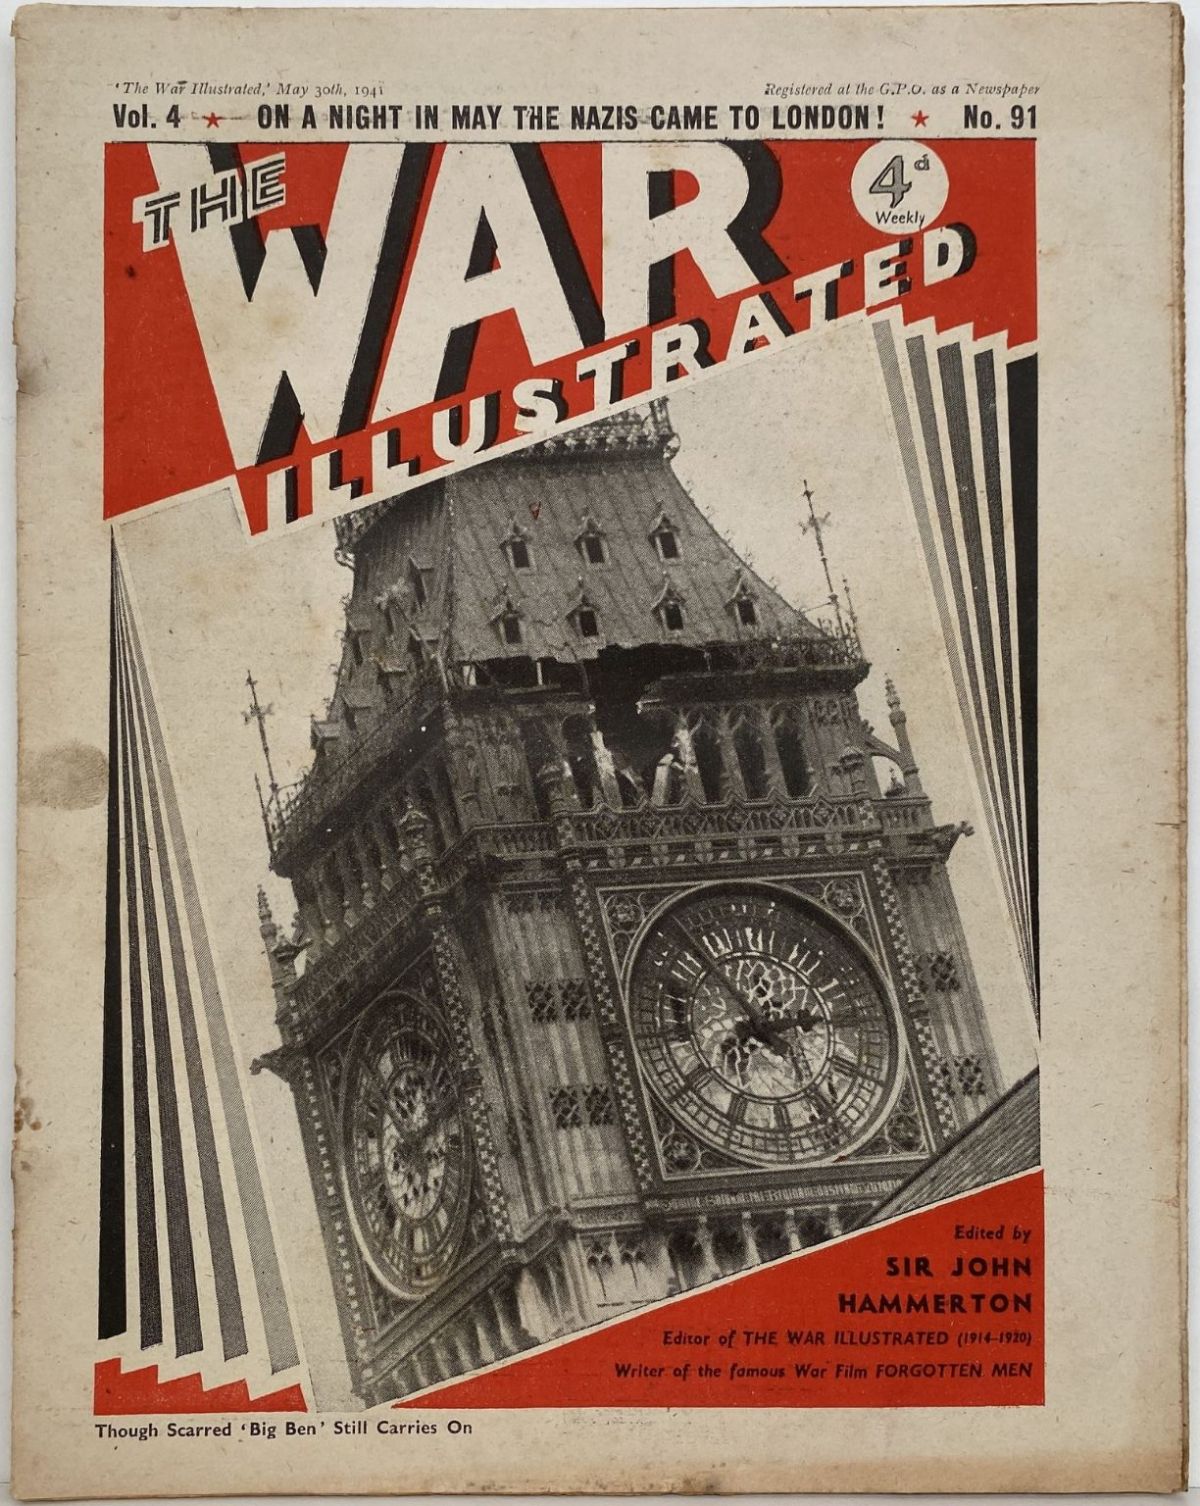 THE WAR ILLUSTRATED - Vol 4, No 91, 30th May 1941